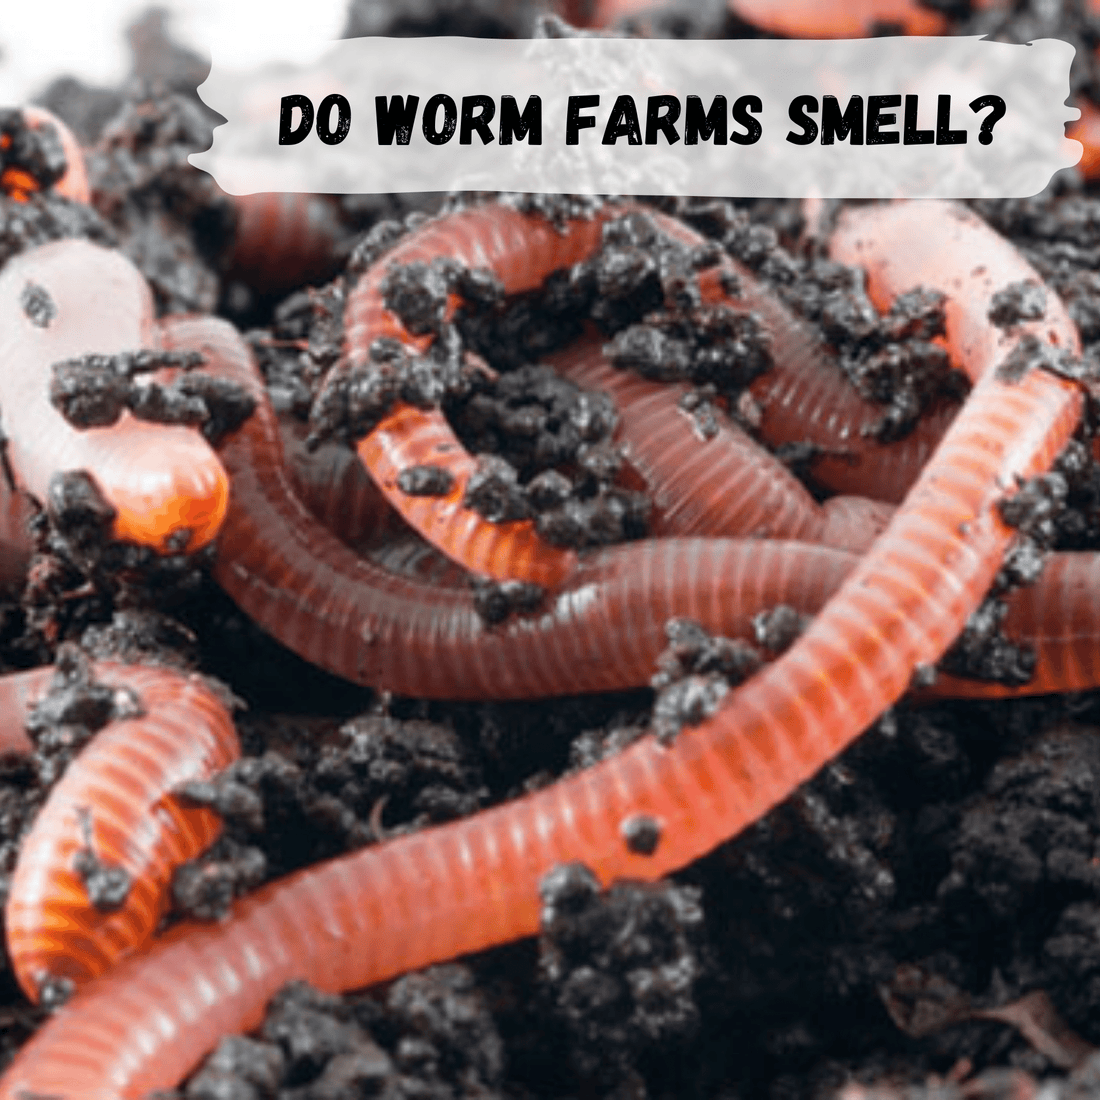 Do worm farms smell?